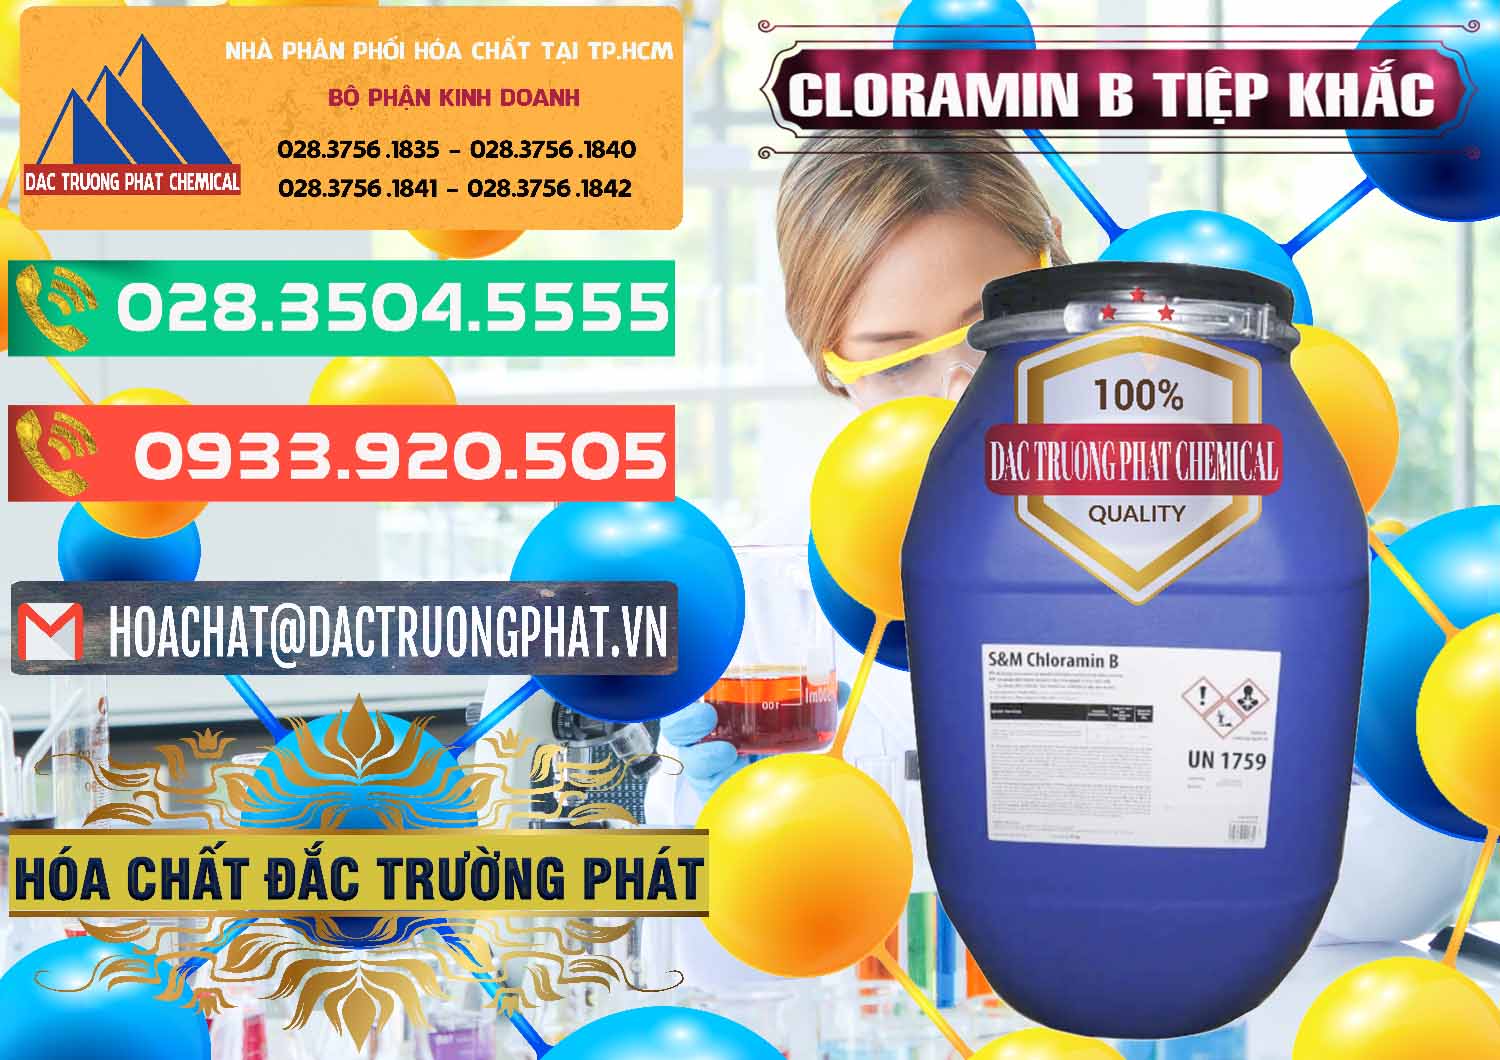 Nhà phân phối và bán Cloramin B Cộng Hòa Séc Tiệp Khắc Czech Republic - 0299 - Công ty chuyên cung cấp & nhập khẩu hóa chất tại TP.HCM - congtyhoachat.com.vn